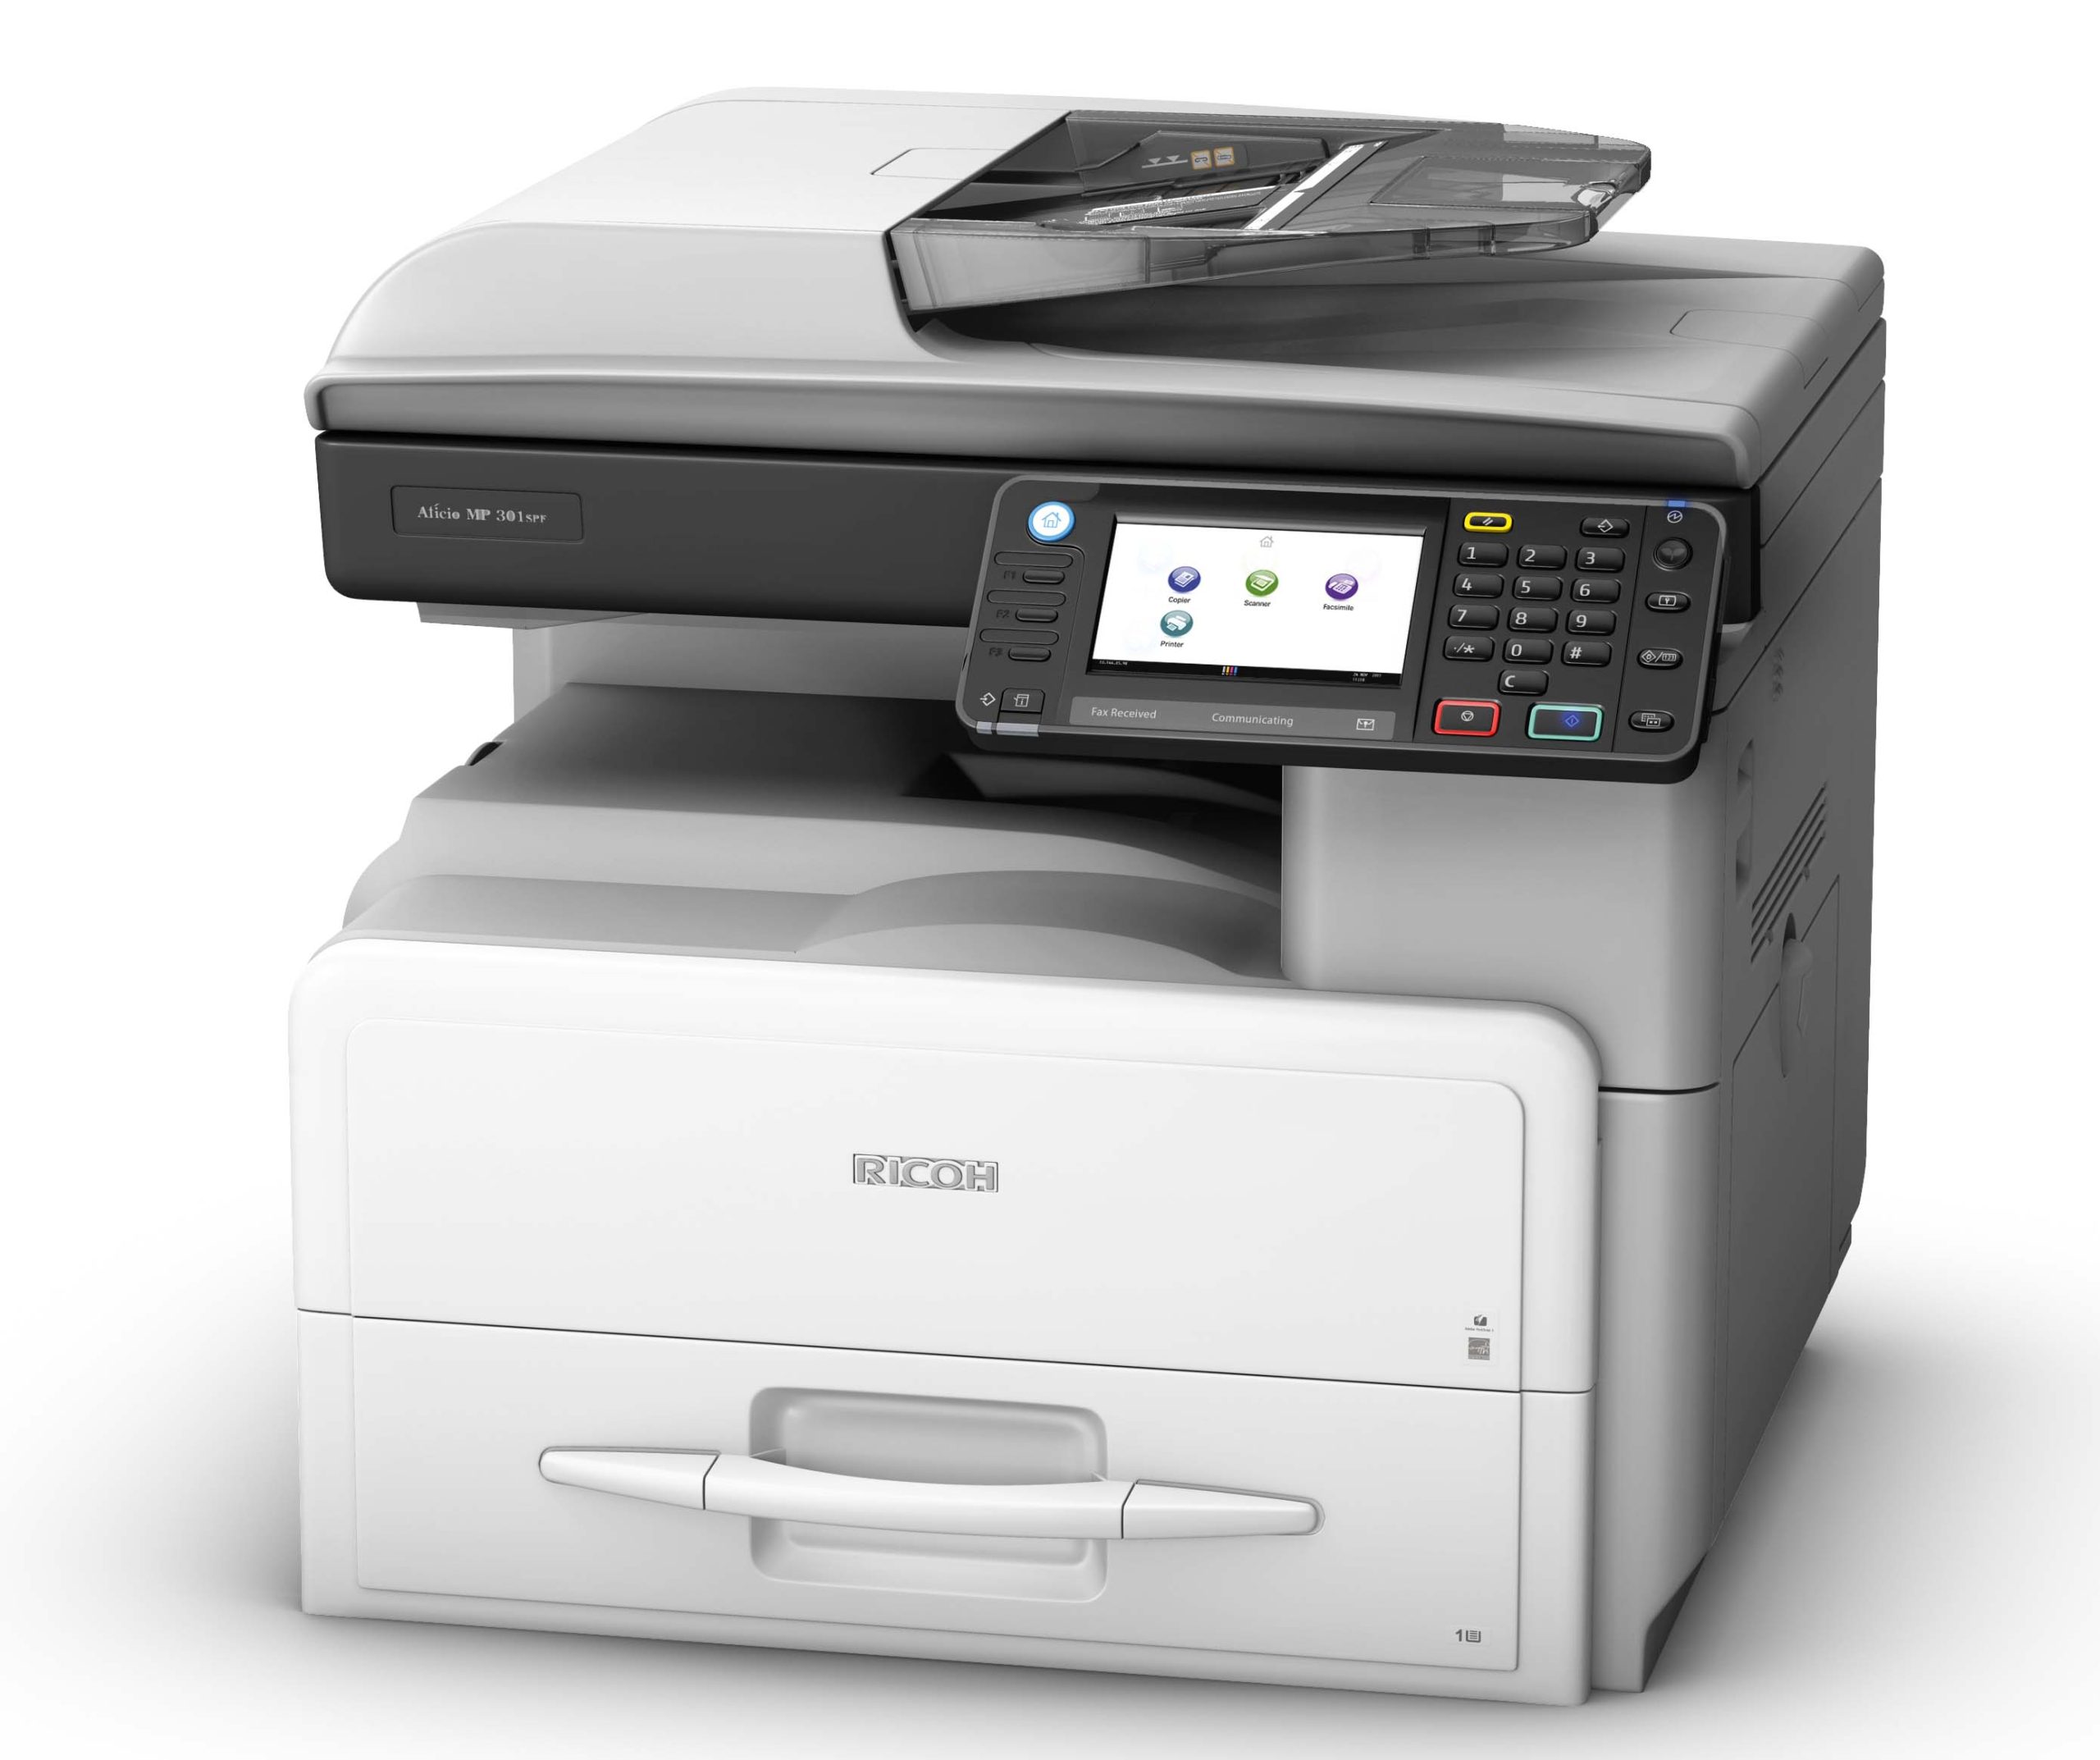 Ricoh MP 301 là dòng máy photocopy giá rẻ khá bền